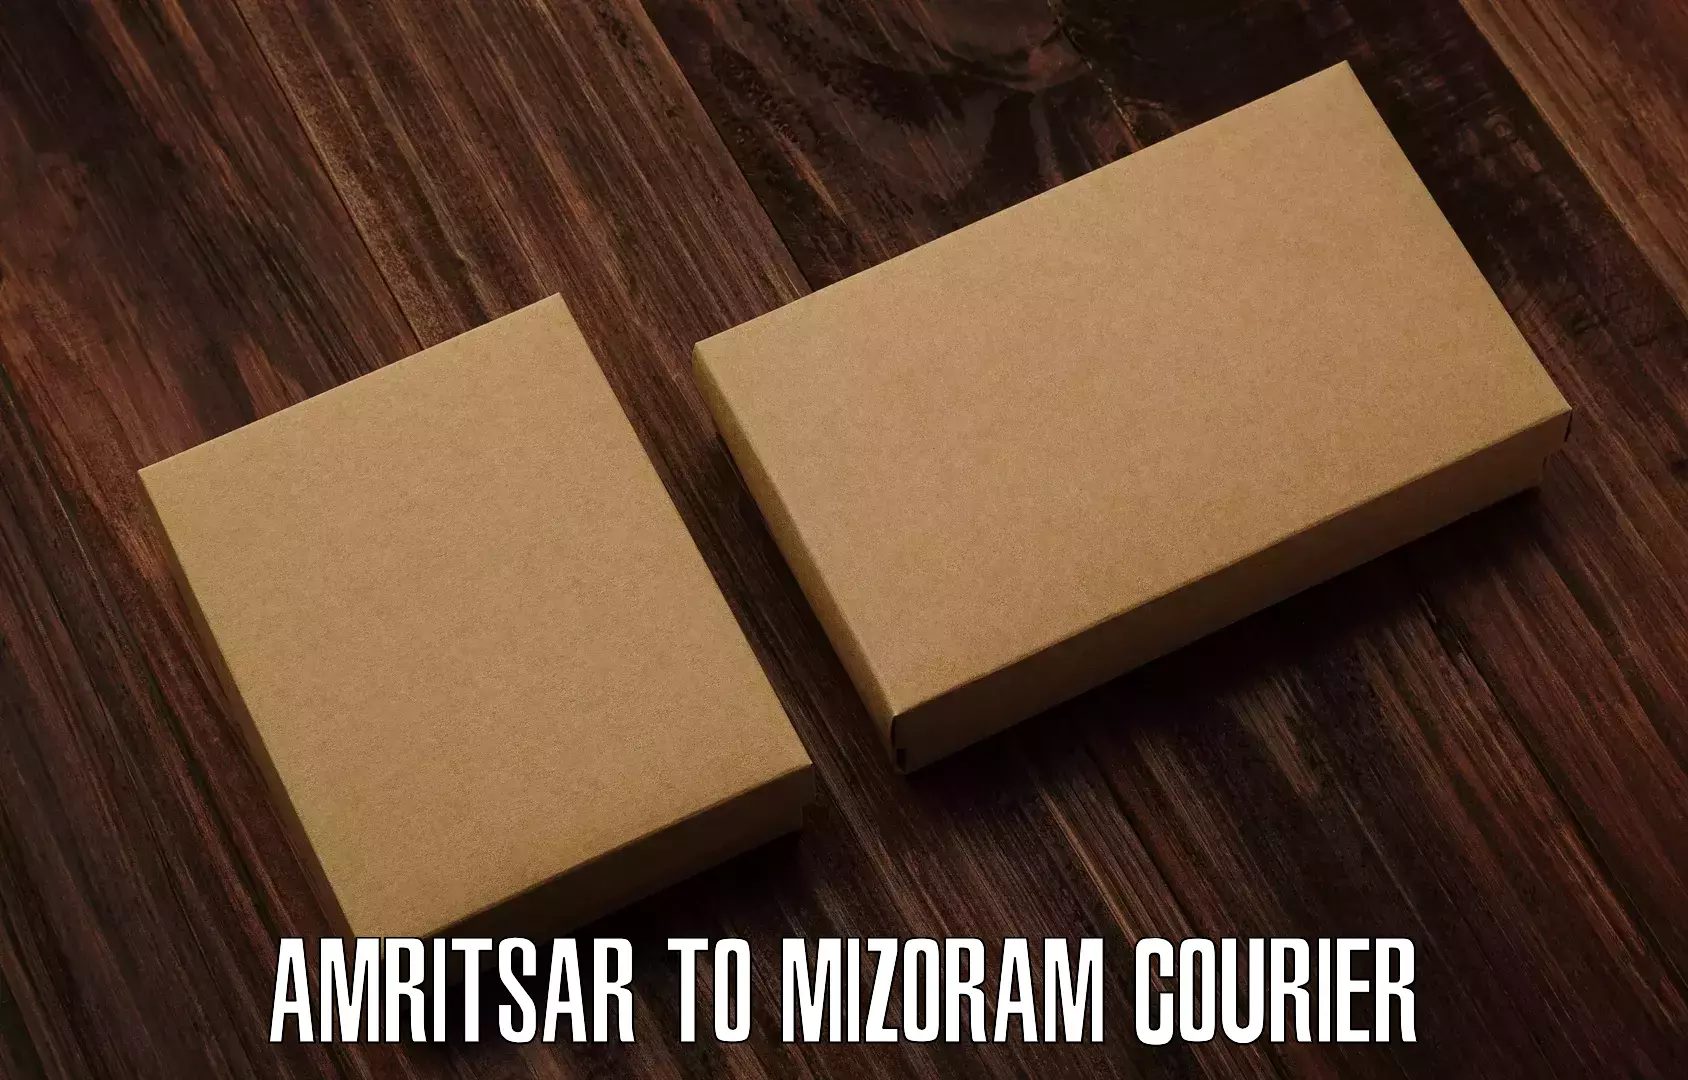 Cargo courier service Amritsar to Siaha